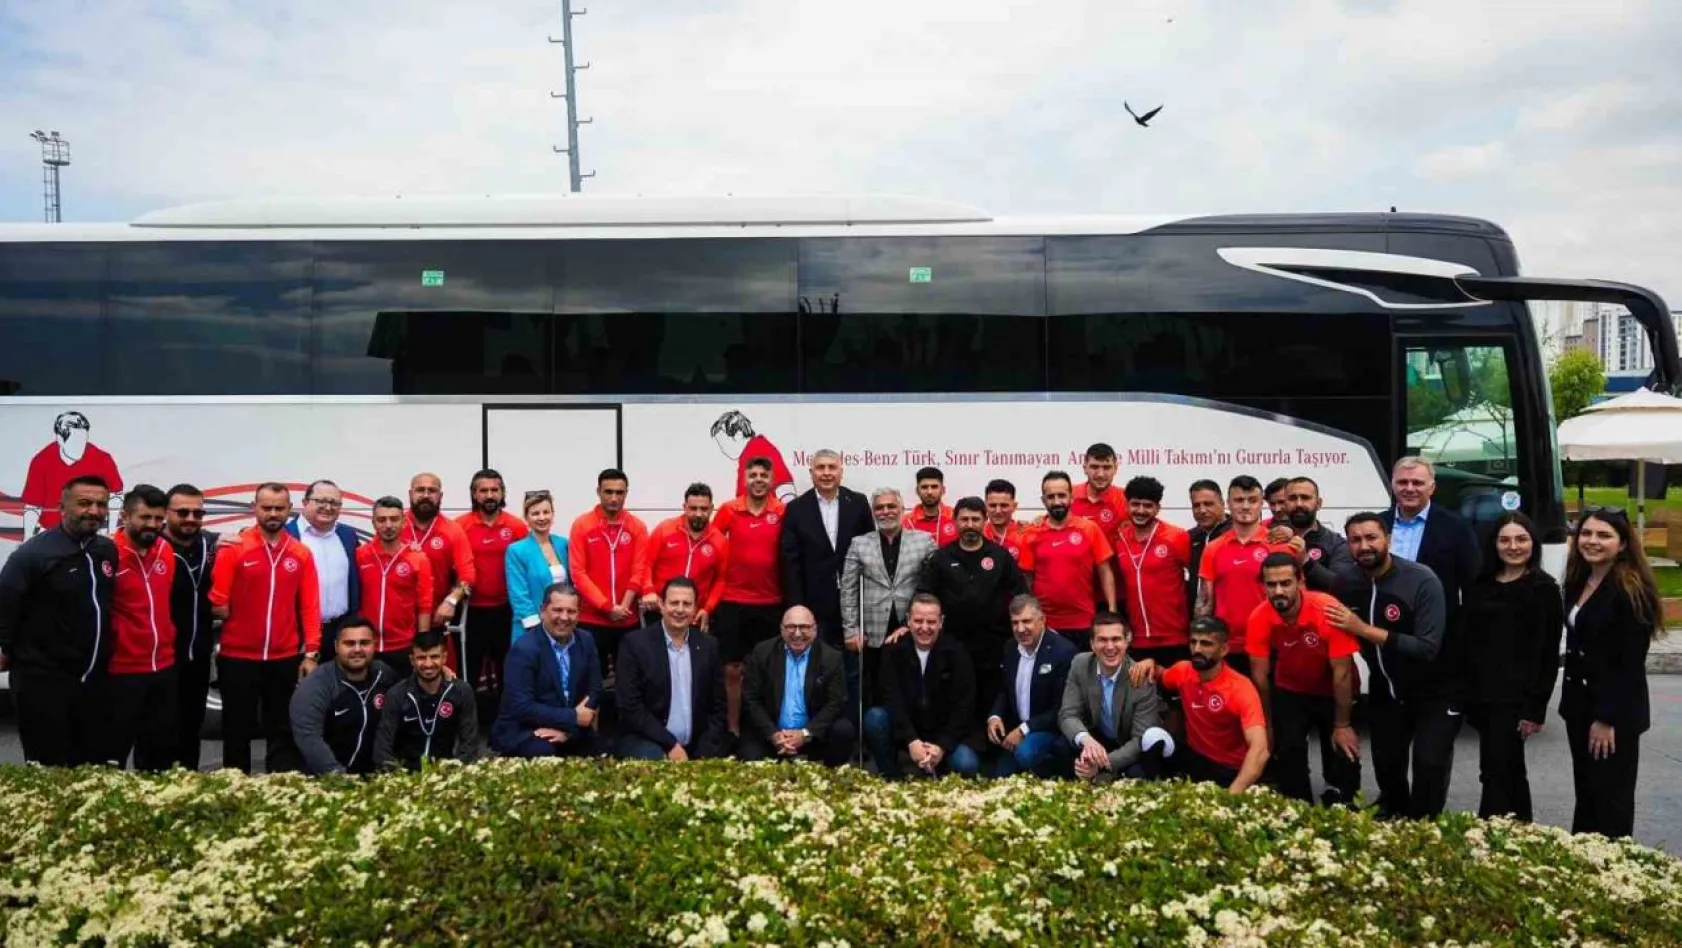 Mercedes-Benz Türk, Ampute Futbol Milli Takımı'nı Hoşdere Otobüs Fabrikası'nda ağırladı